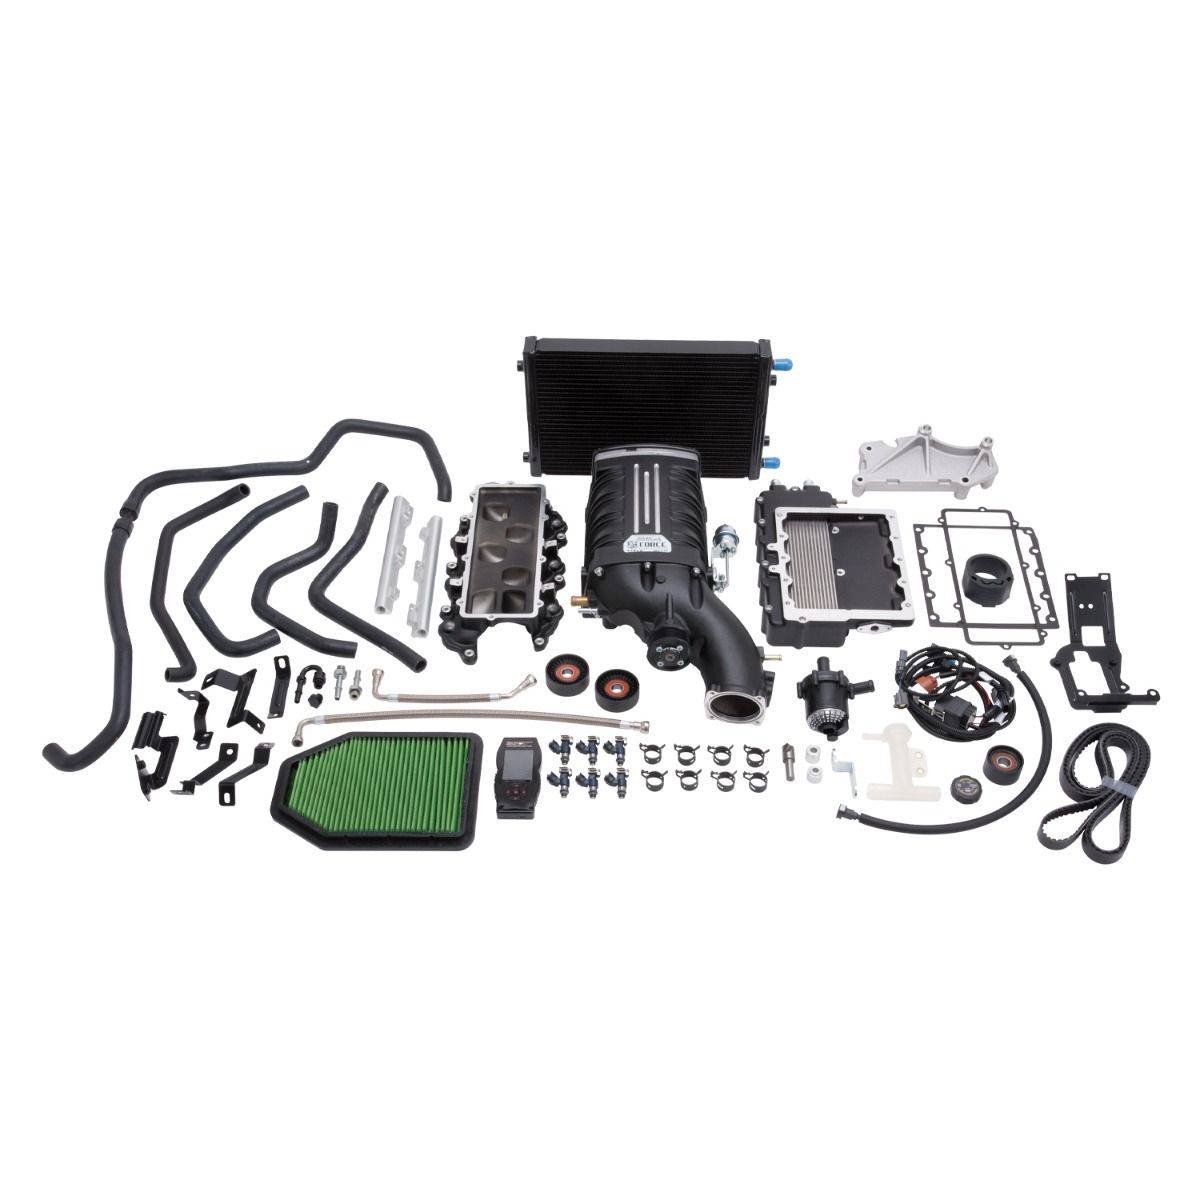 Edelbrock - Jeep Wrangler JK 3.6L 2012-2014 Edelbrock Stage 1 Complete Supercharger Intercooled Kit With Tune - Image 1